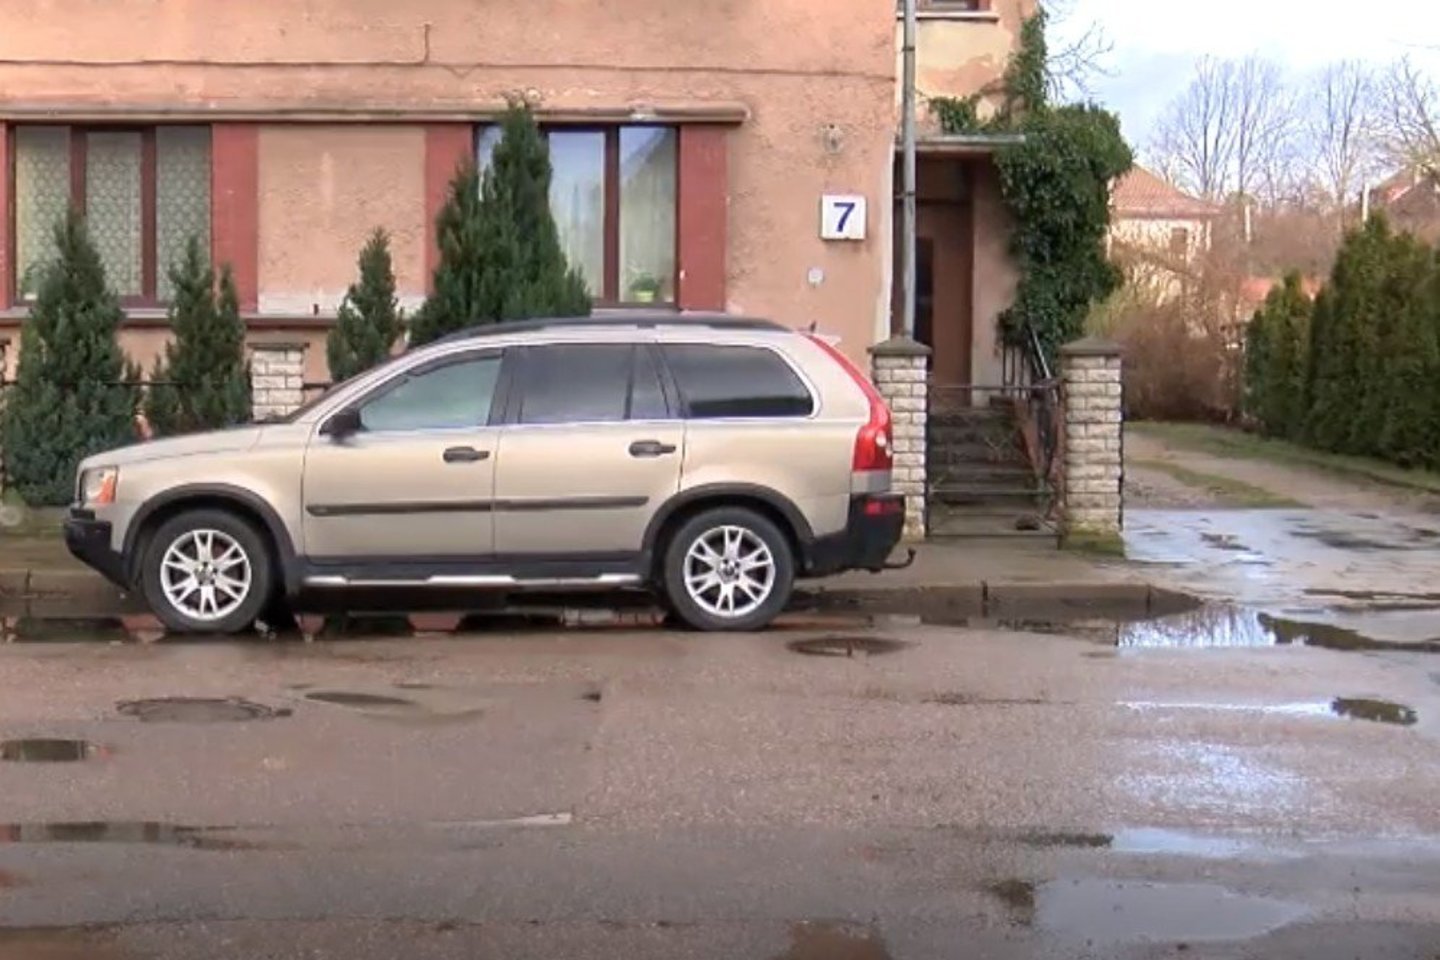 Vilniuje nusipirkę automobilį ir sugrįžę juo namo klaipėdiečiai suvokė, kad įsigijo karstą ant ratų.<br>Stop kadras.